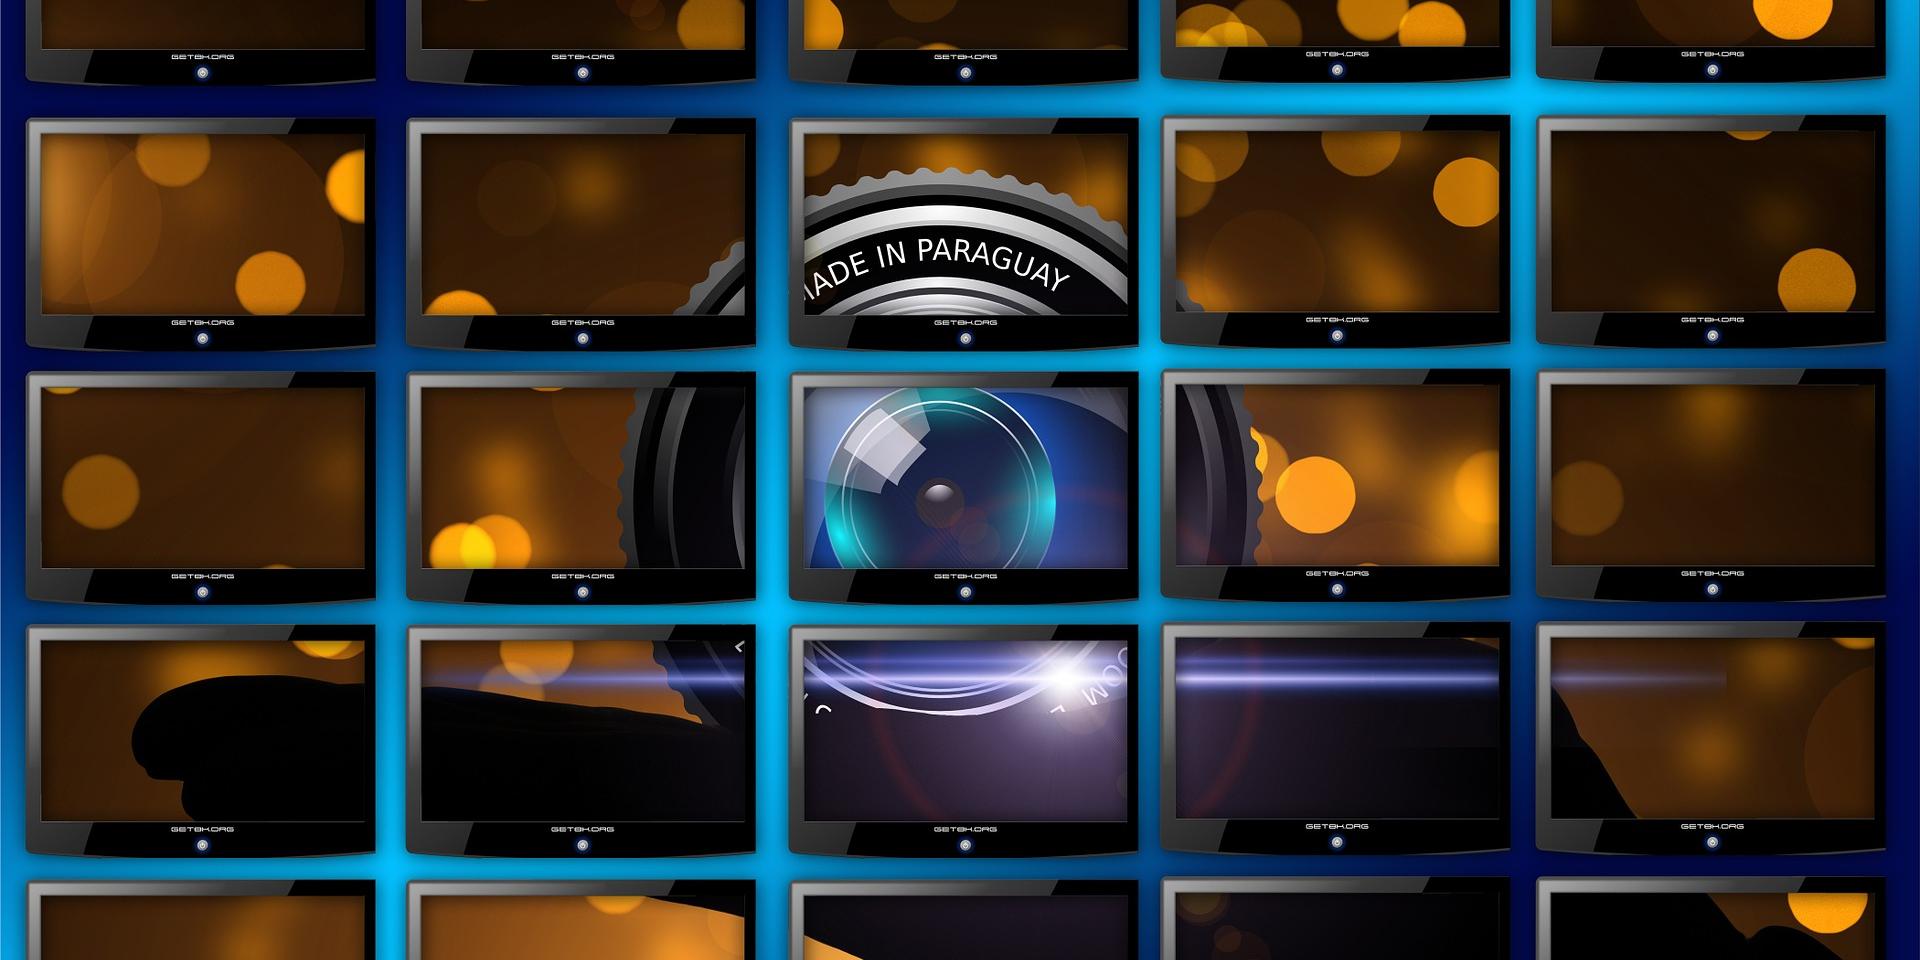 Videowand (c) www.pixabay.com